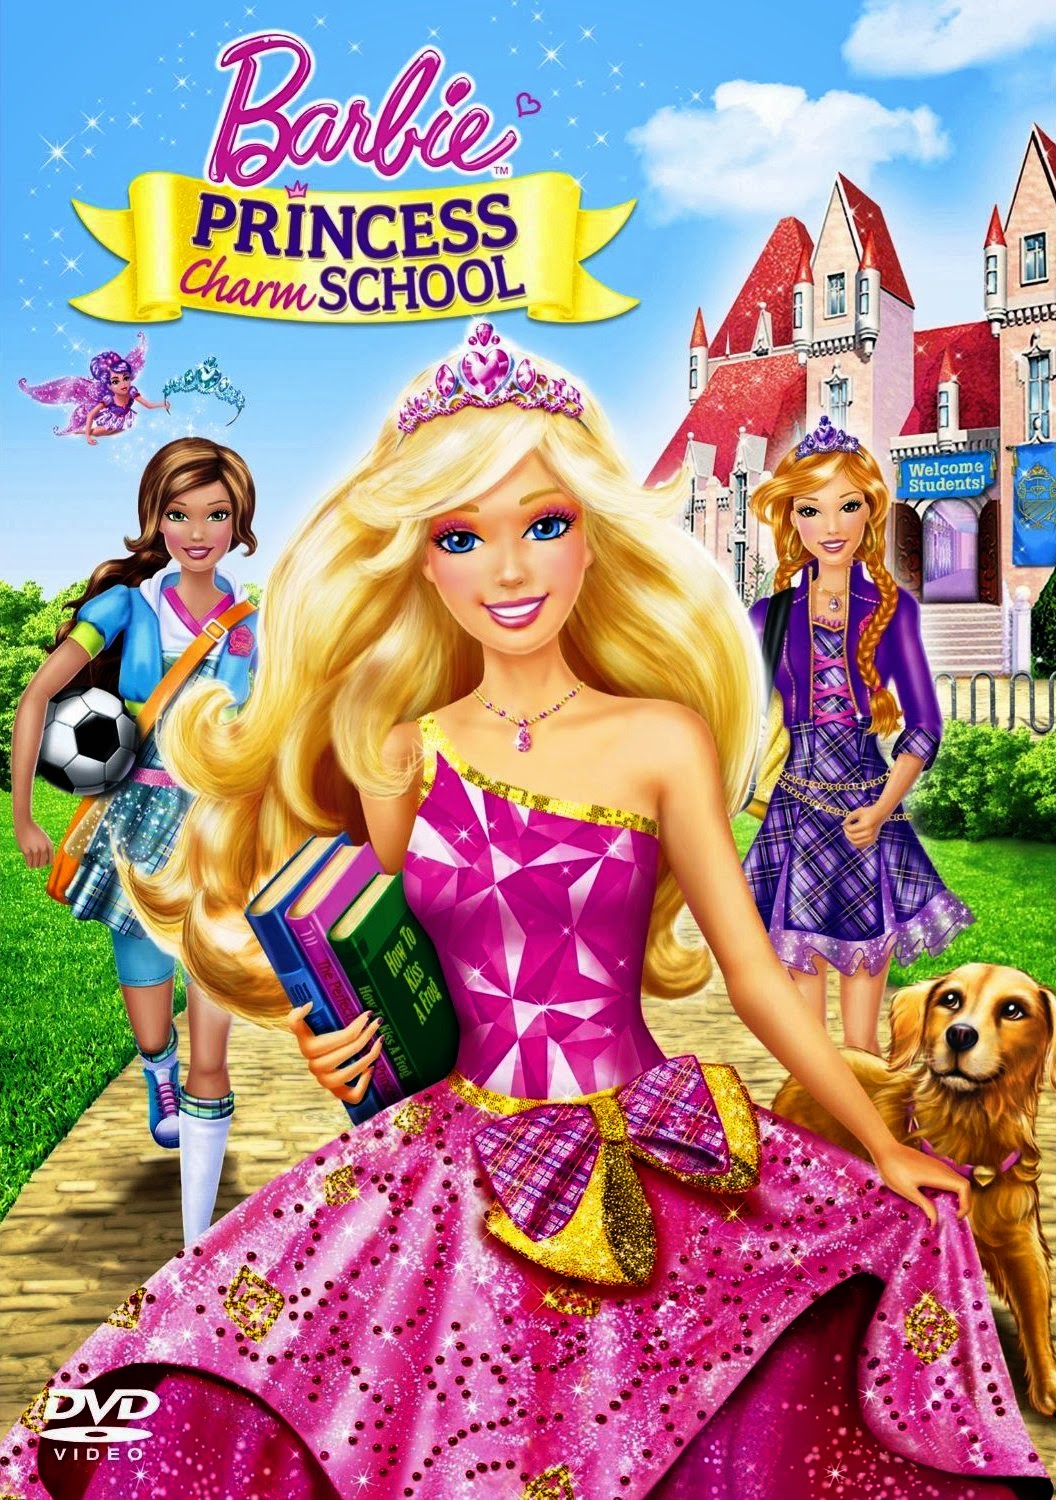 ბარბი: პრინცესა და პოპ-ვარსკვლავი / Barbie. The Princess and The Popsta